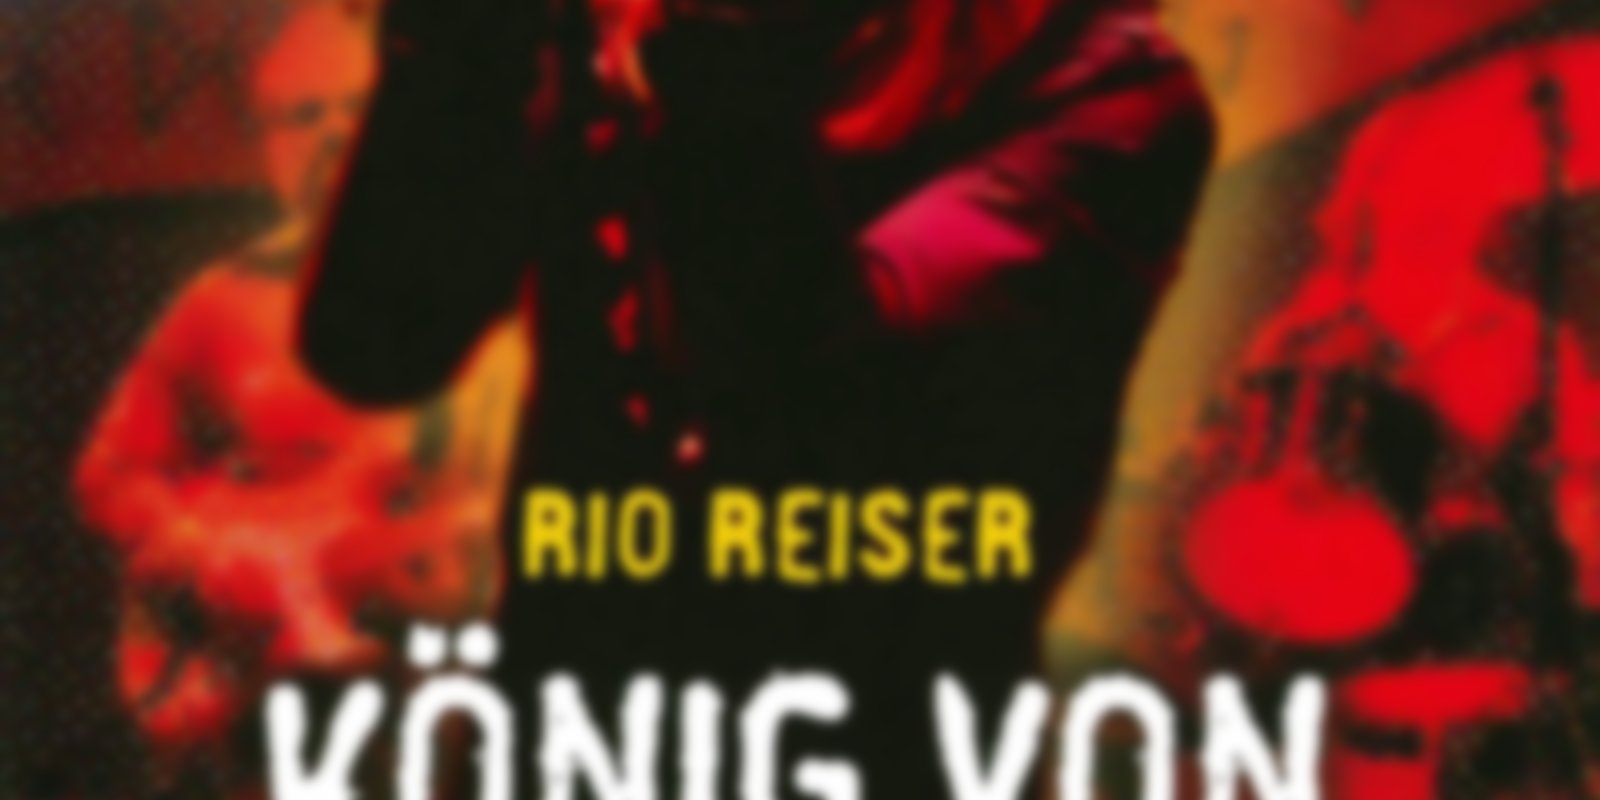 Rio Reiser - König von Deutschland